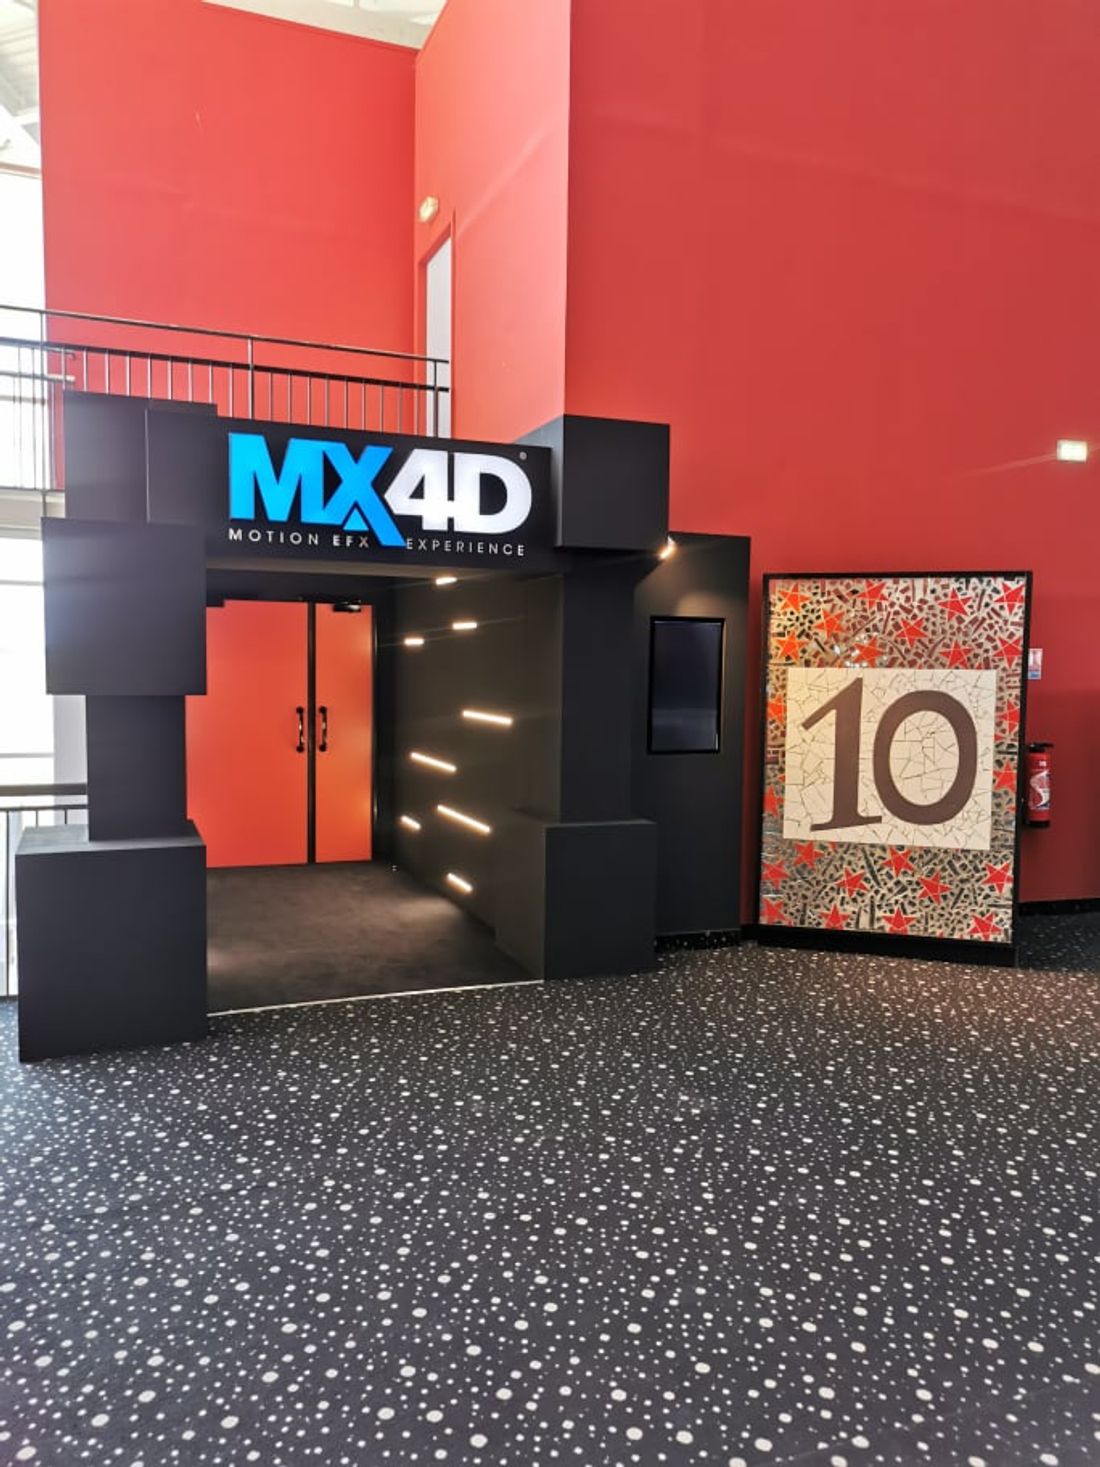 l'entrée de la nouvelle salle MX4D au MégaCastillet